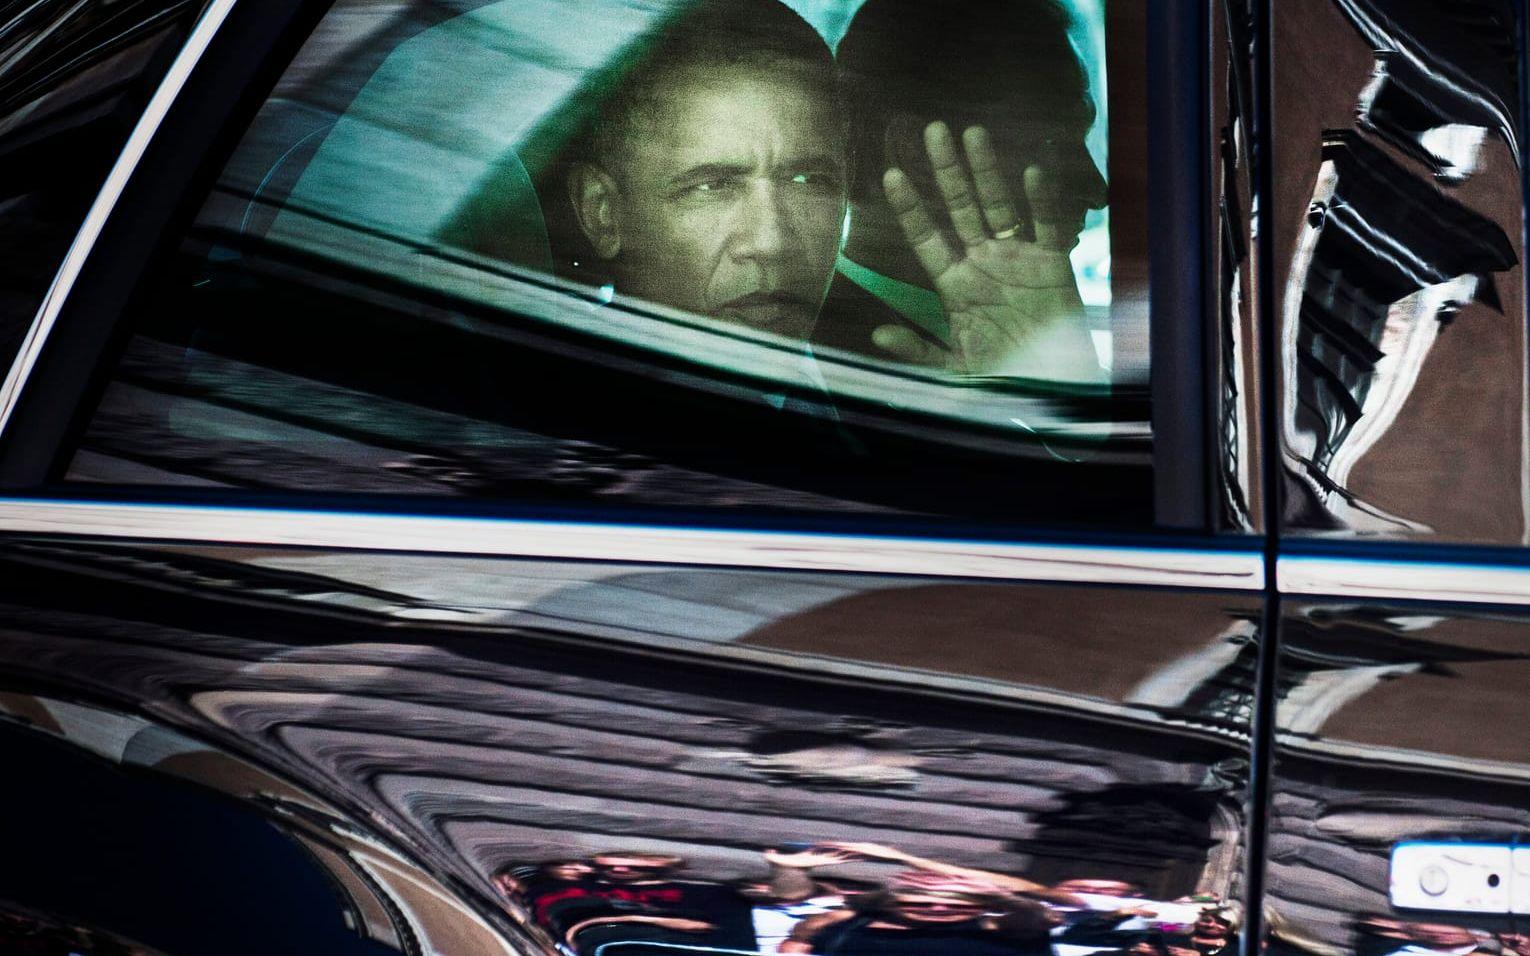 28 augusti, 2013: Obama gör ett besök Sverige. Här vinkar han ut genom fönstret på "The Beast" när han passerar slottet i Stockholm. Foto: TT